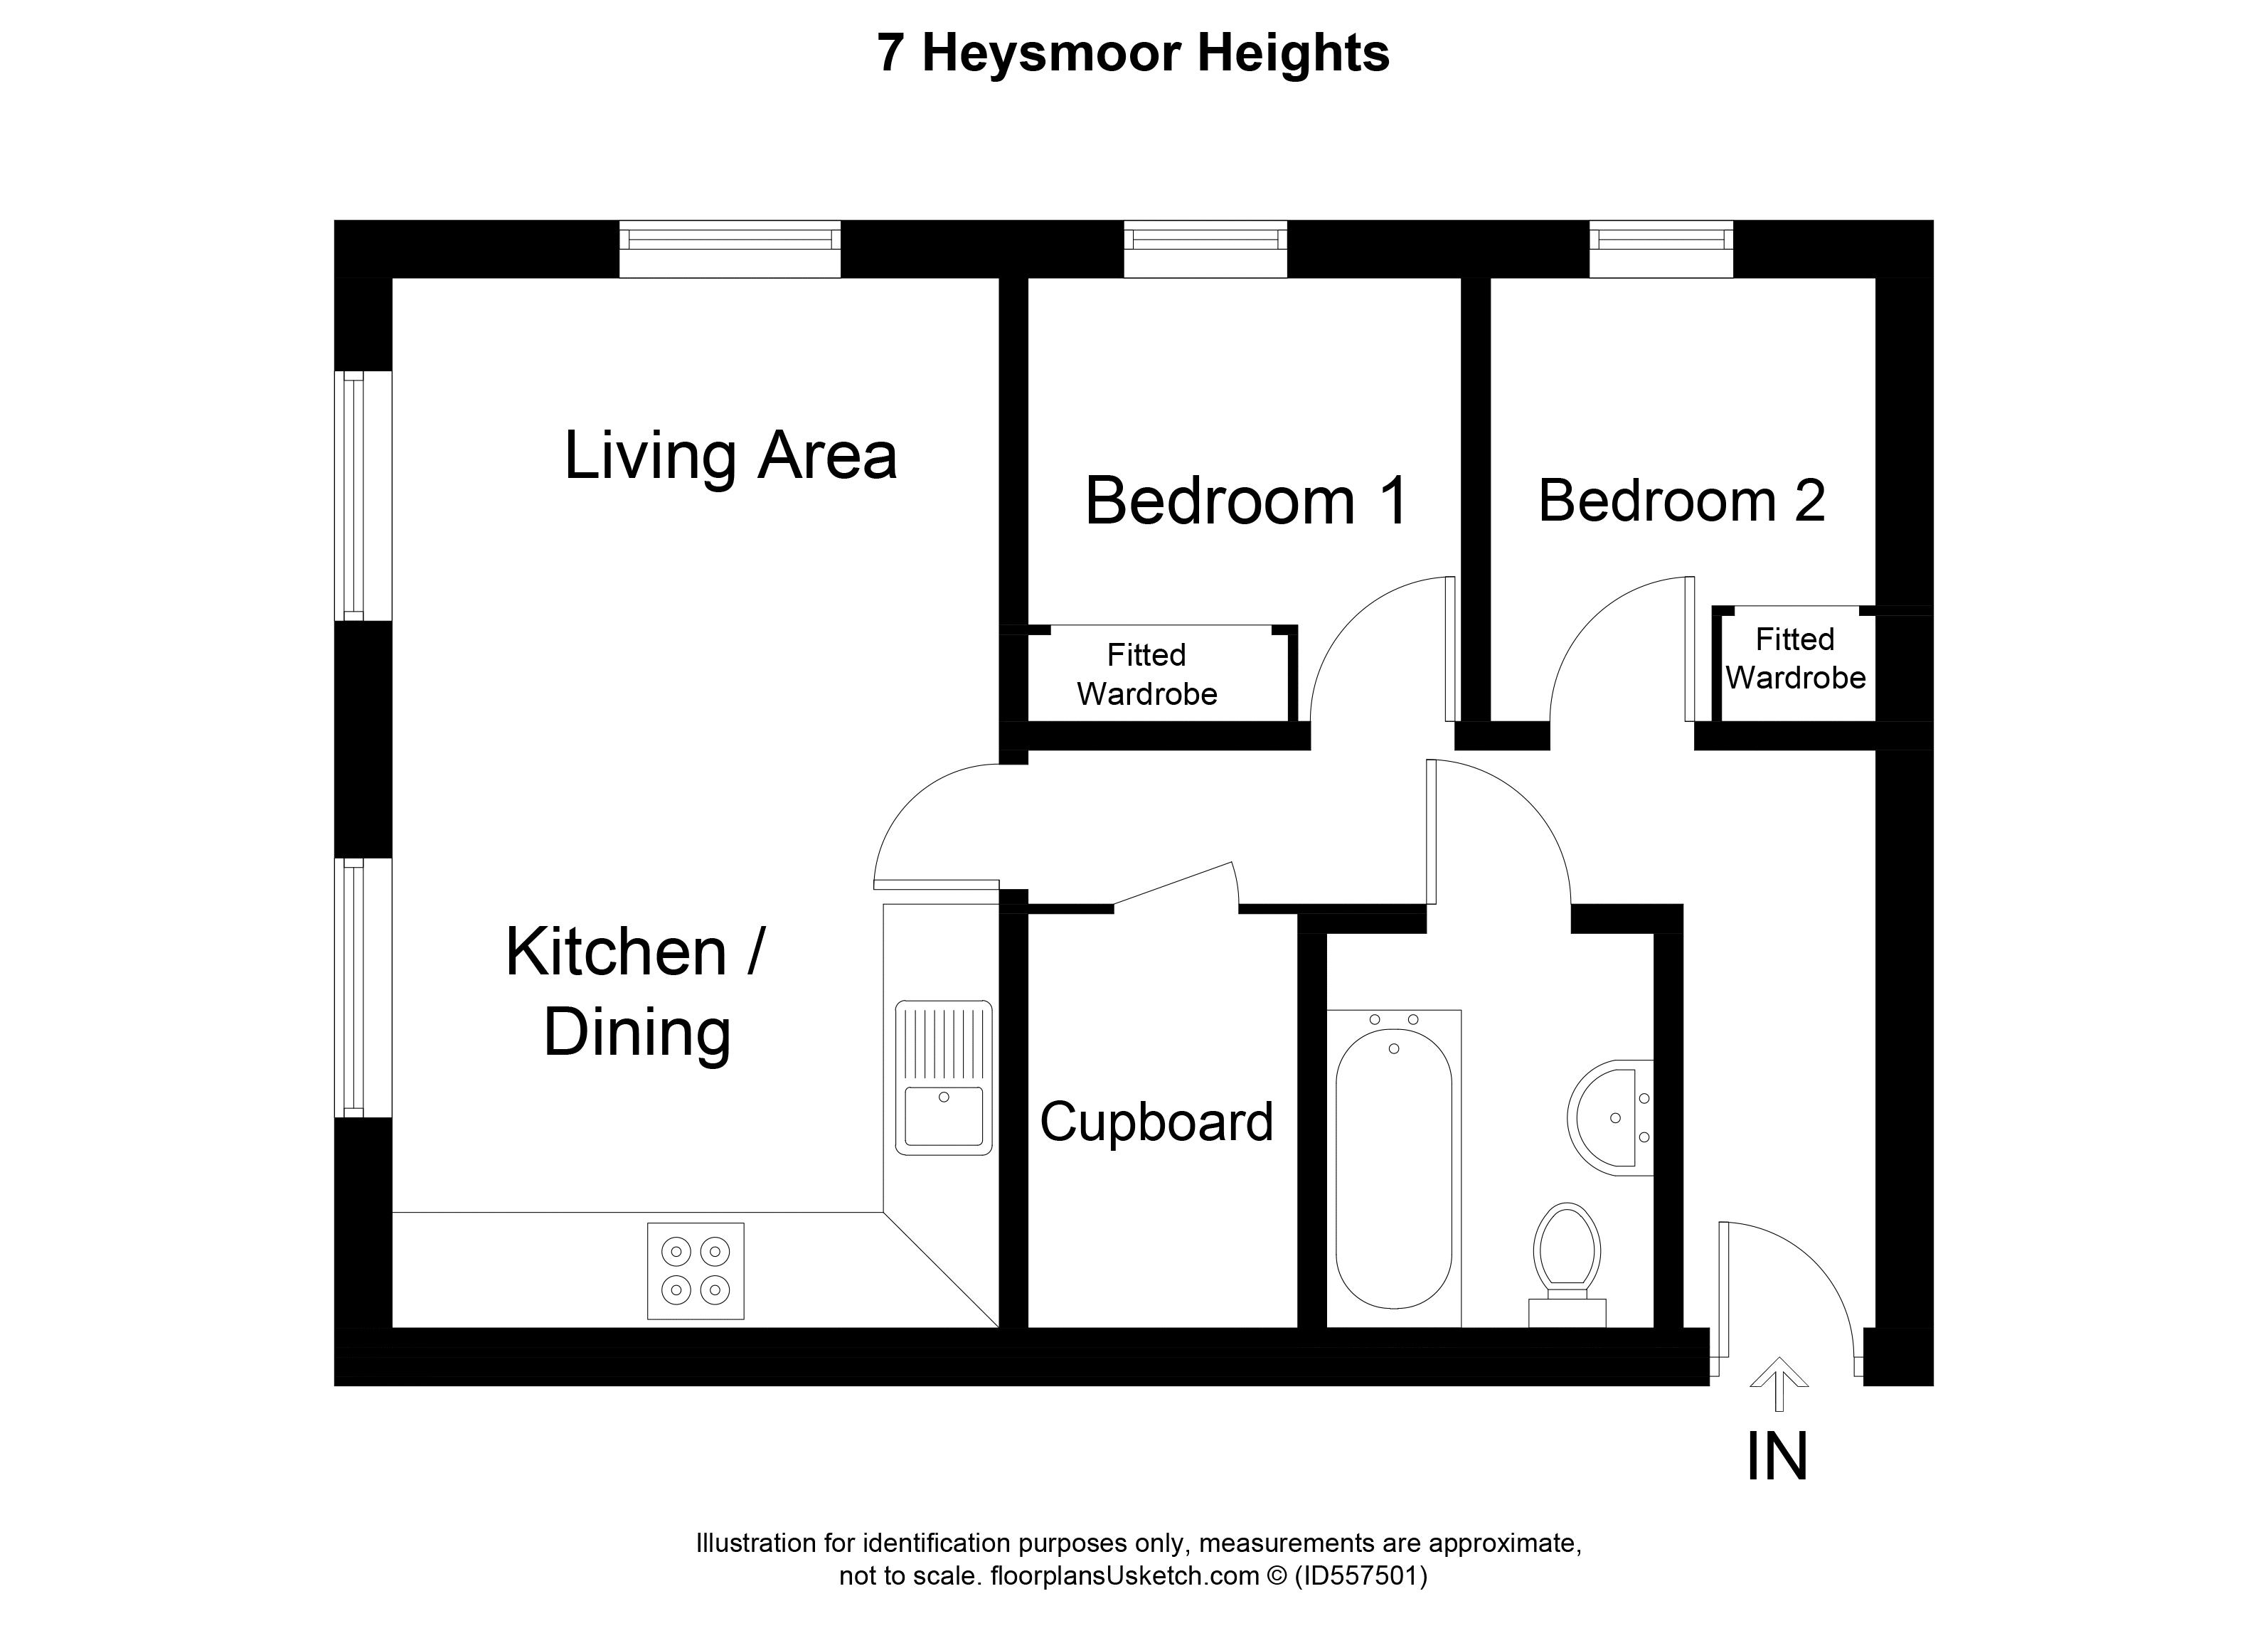 7 Heysmoor Heights